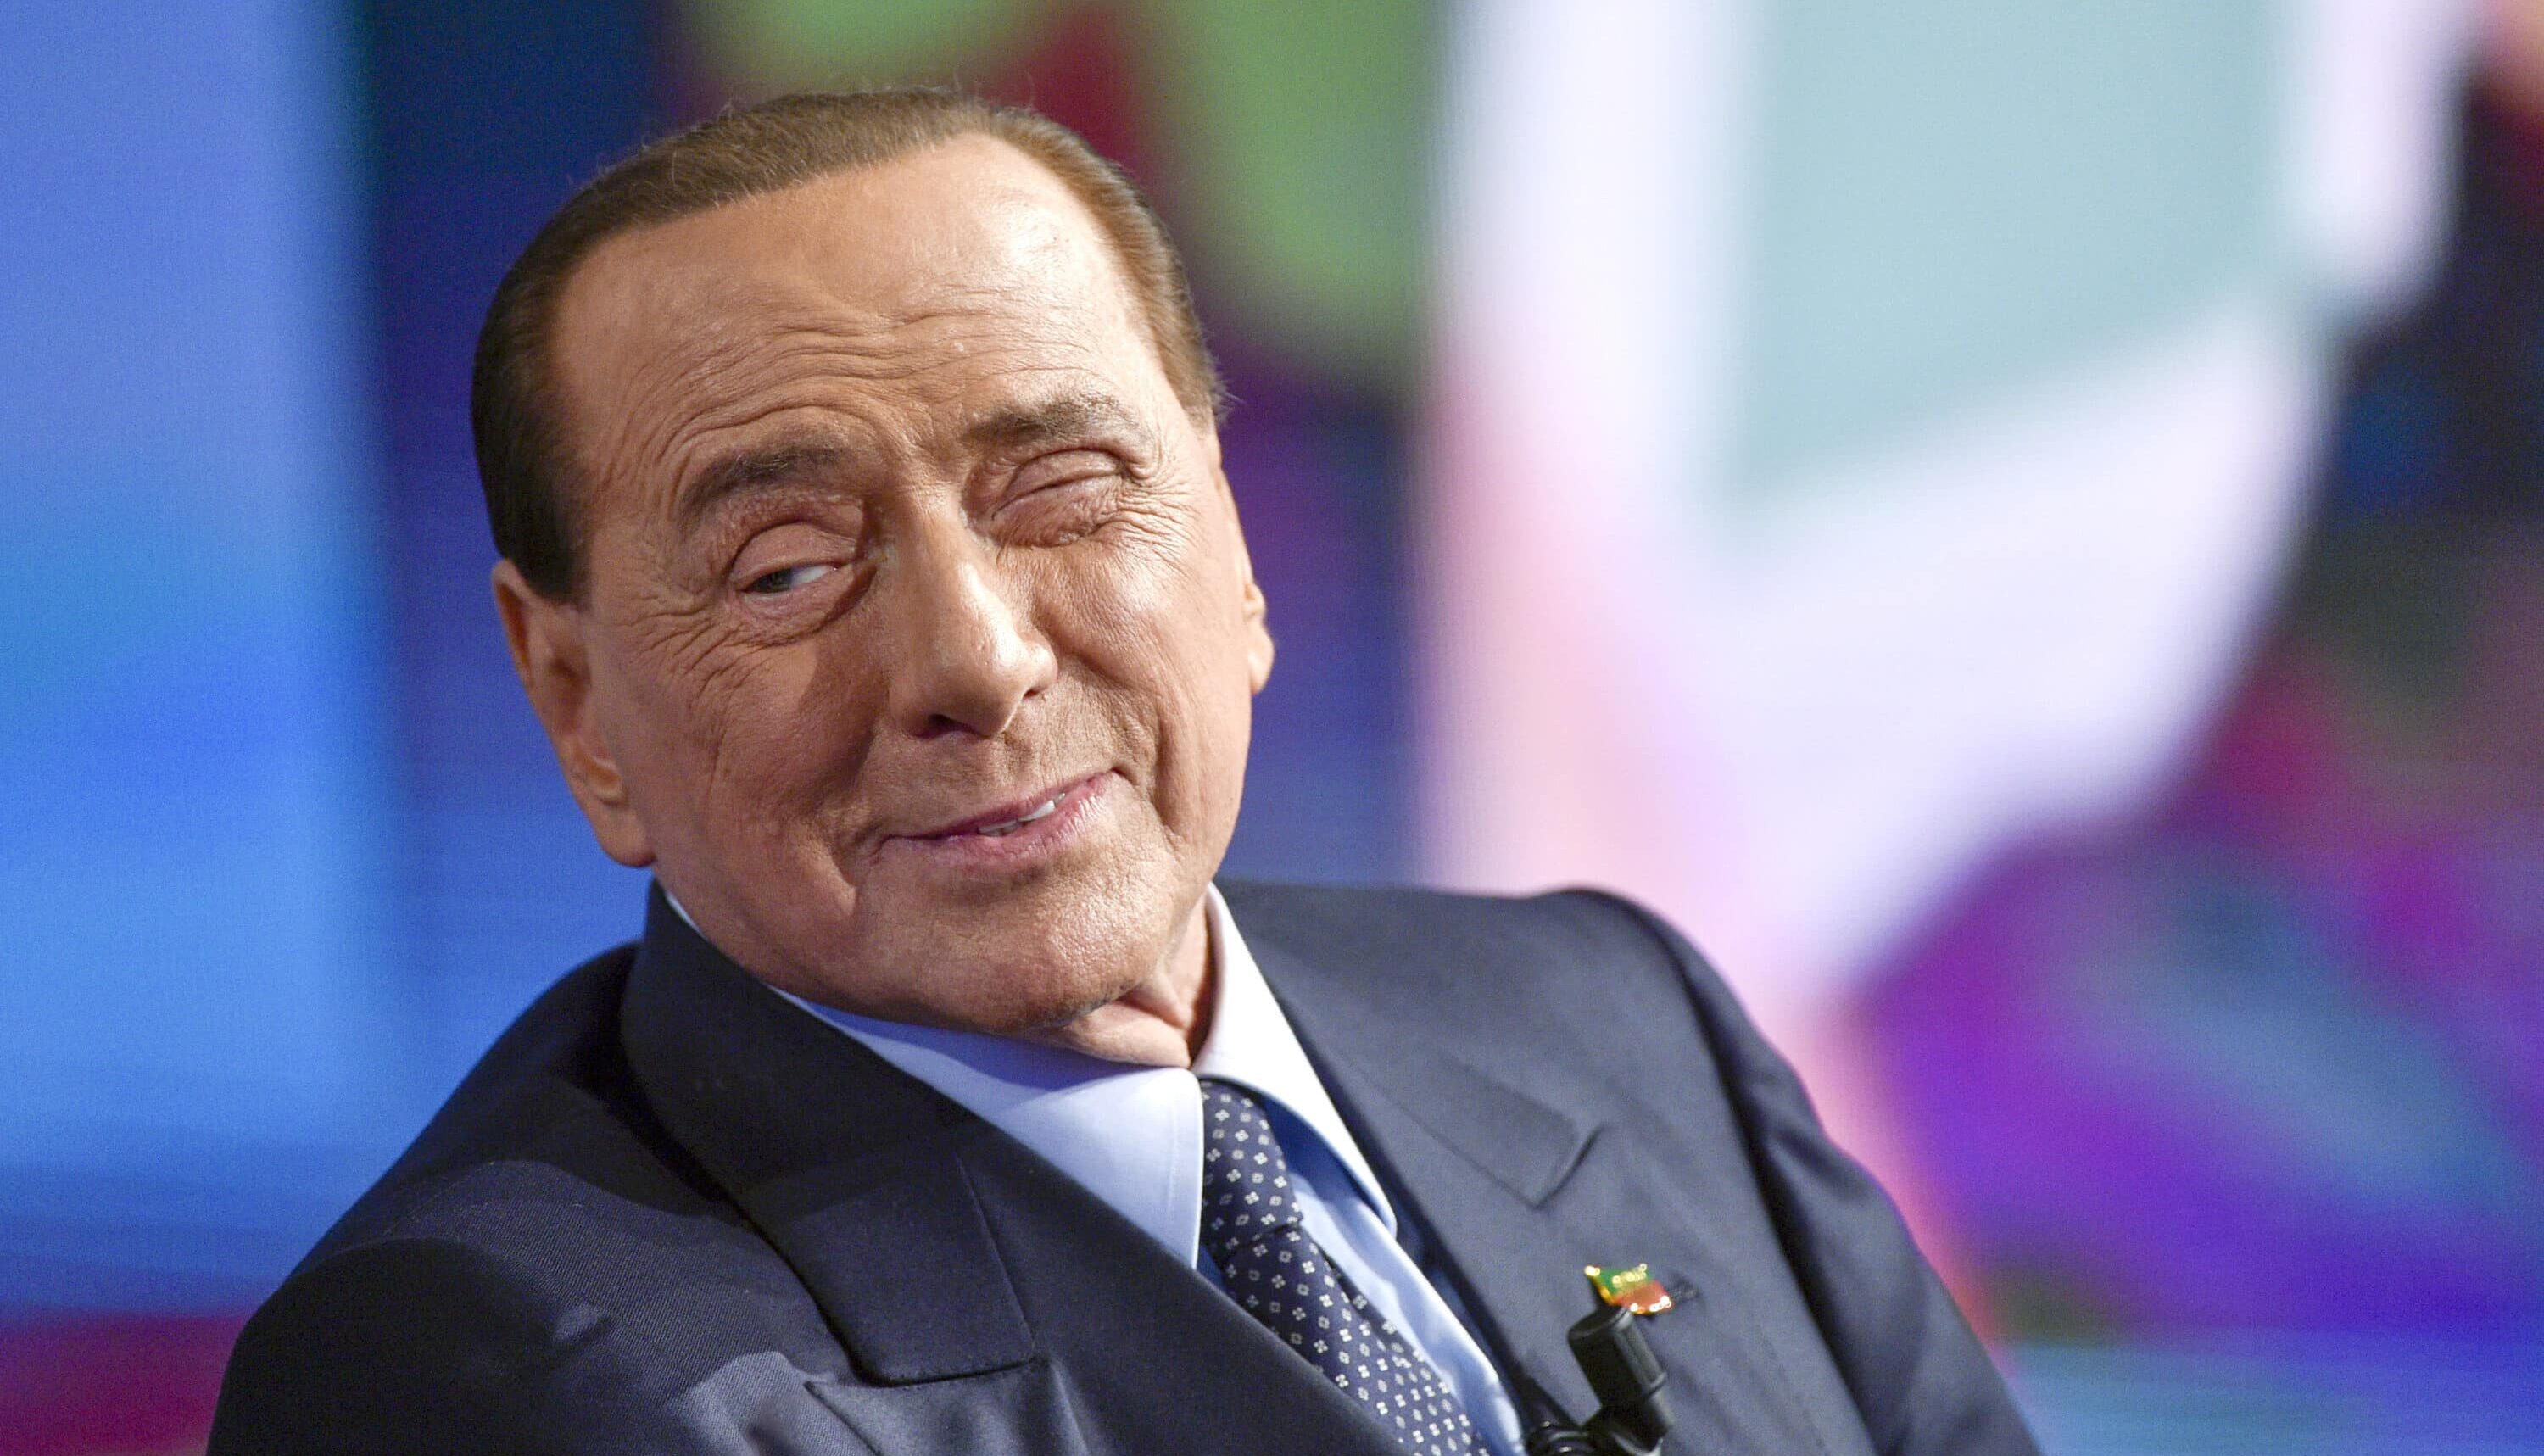 Dopo 45 giorni, Berlusconi è stato dimesso dall’ospedale San Raffaele di Milano. Il Cavaliere era in cura per un’infezione polmonare collegata a una leucemia cronica